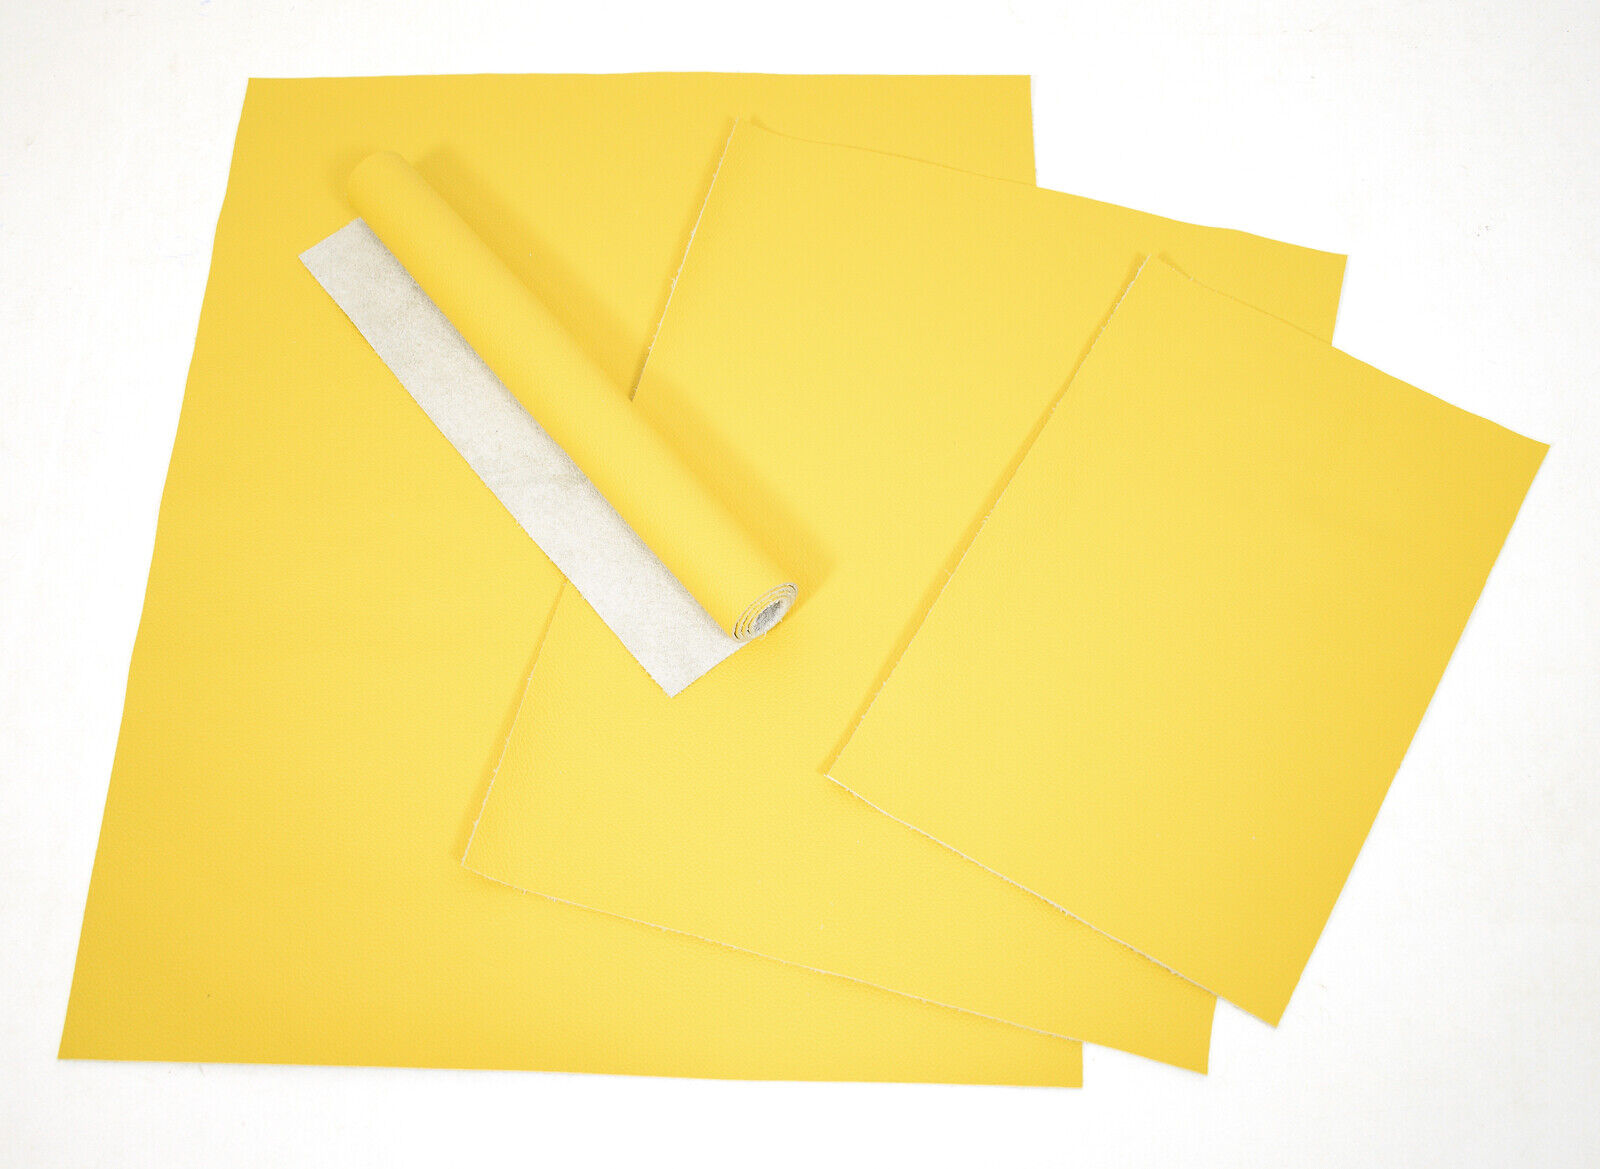 Rindsleder Nappa gelb 1,0-1,2 mm div. Größen Möbelleder Taschenleder Leder #w574 Tot 15% korting op een set